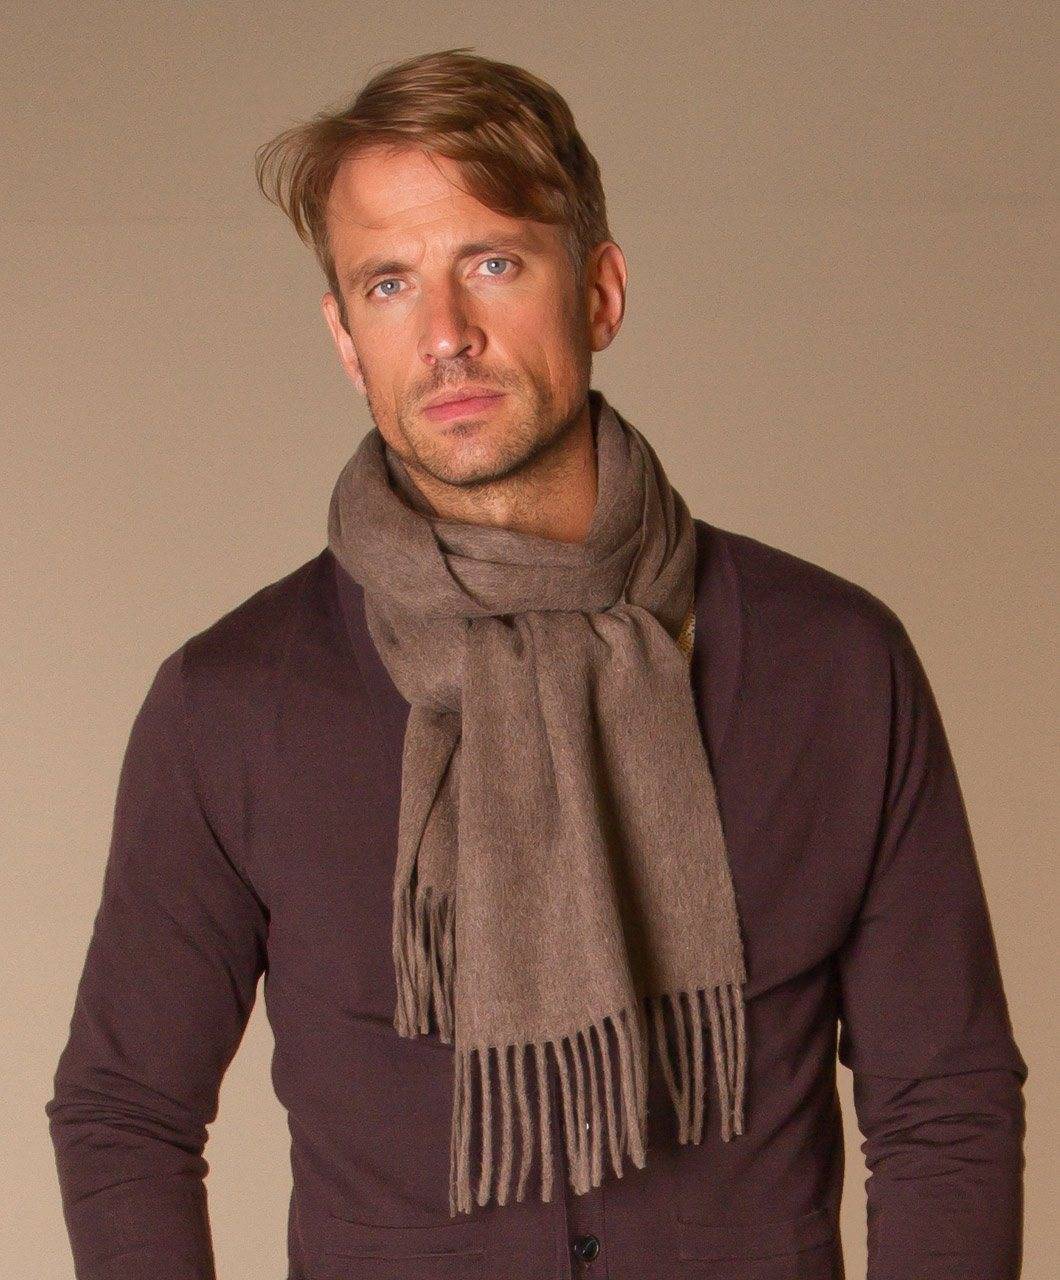 Нужно ли носить мужской шарф: плюсы и минусы